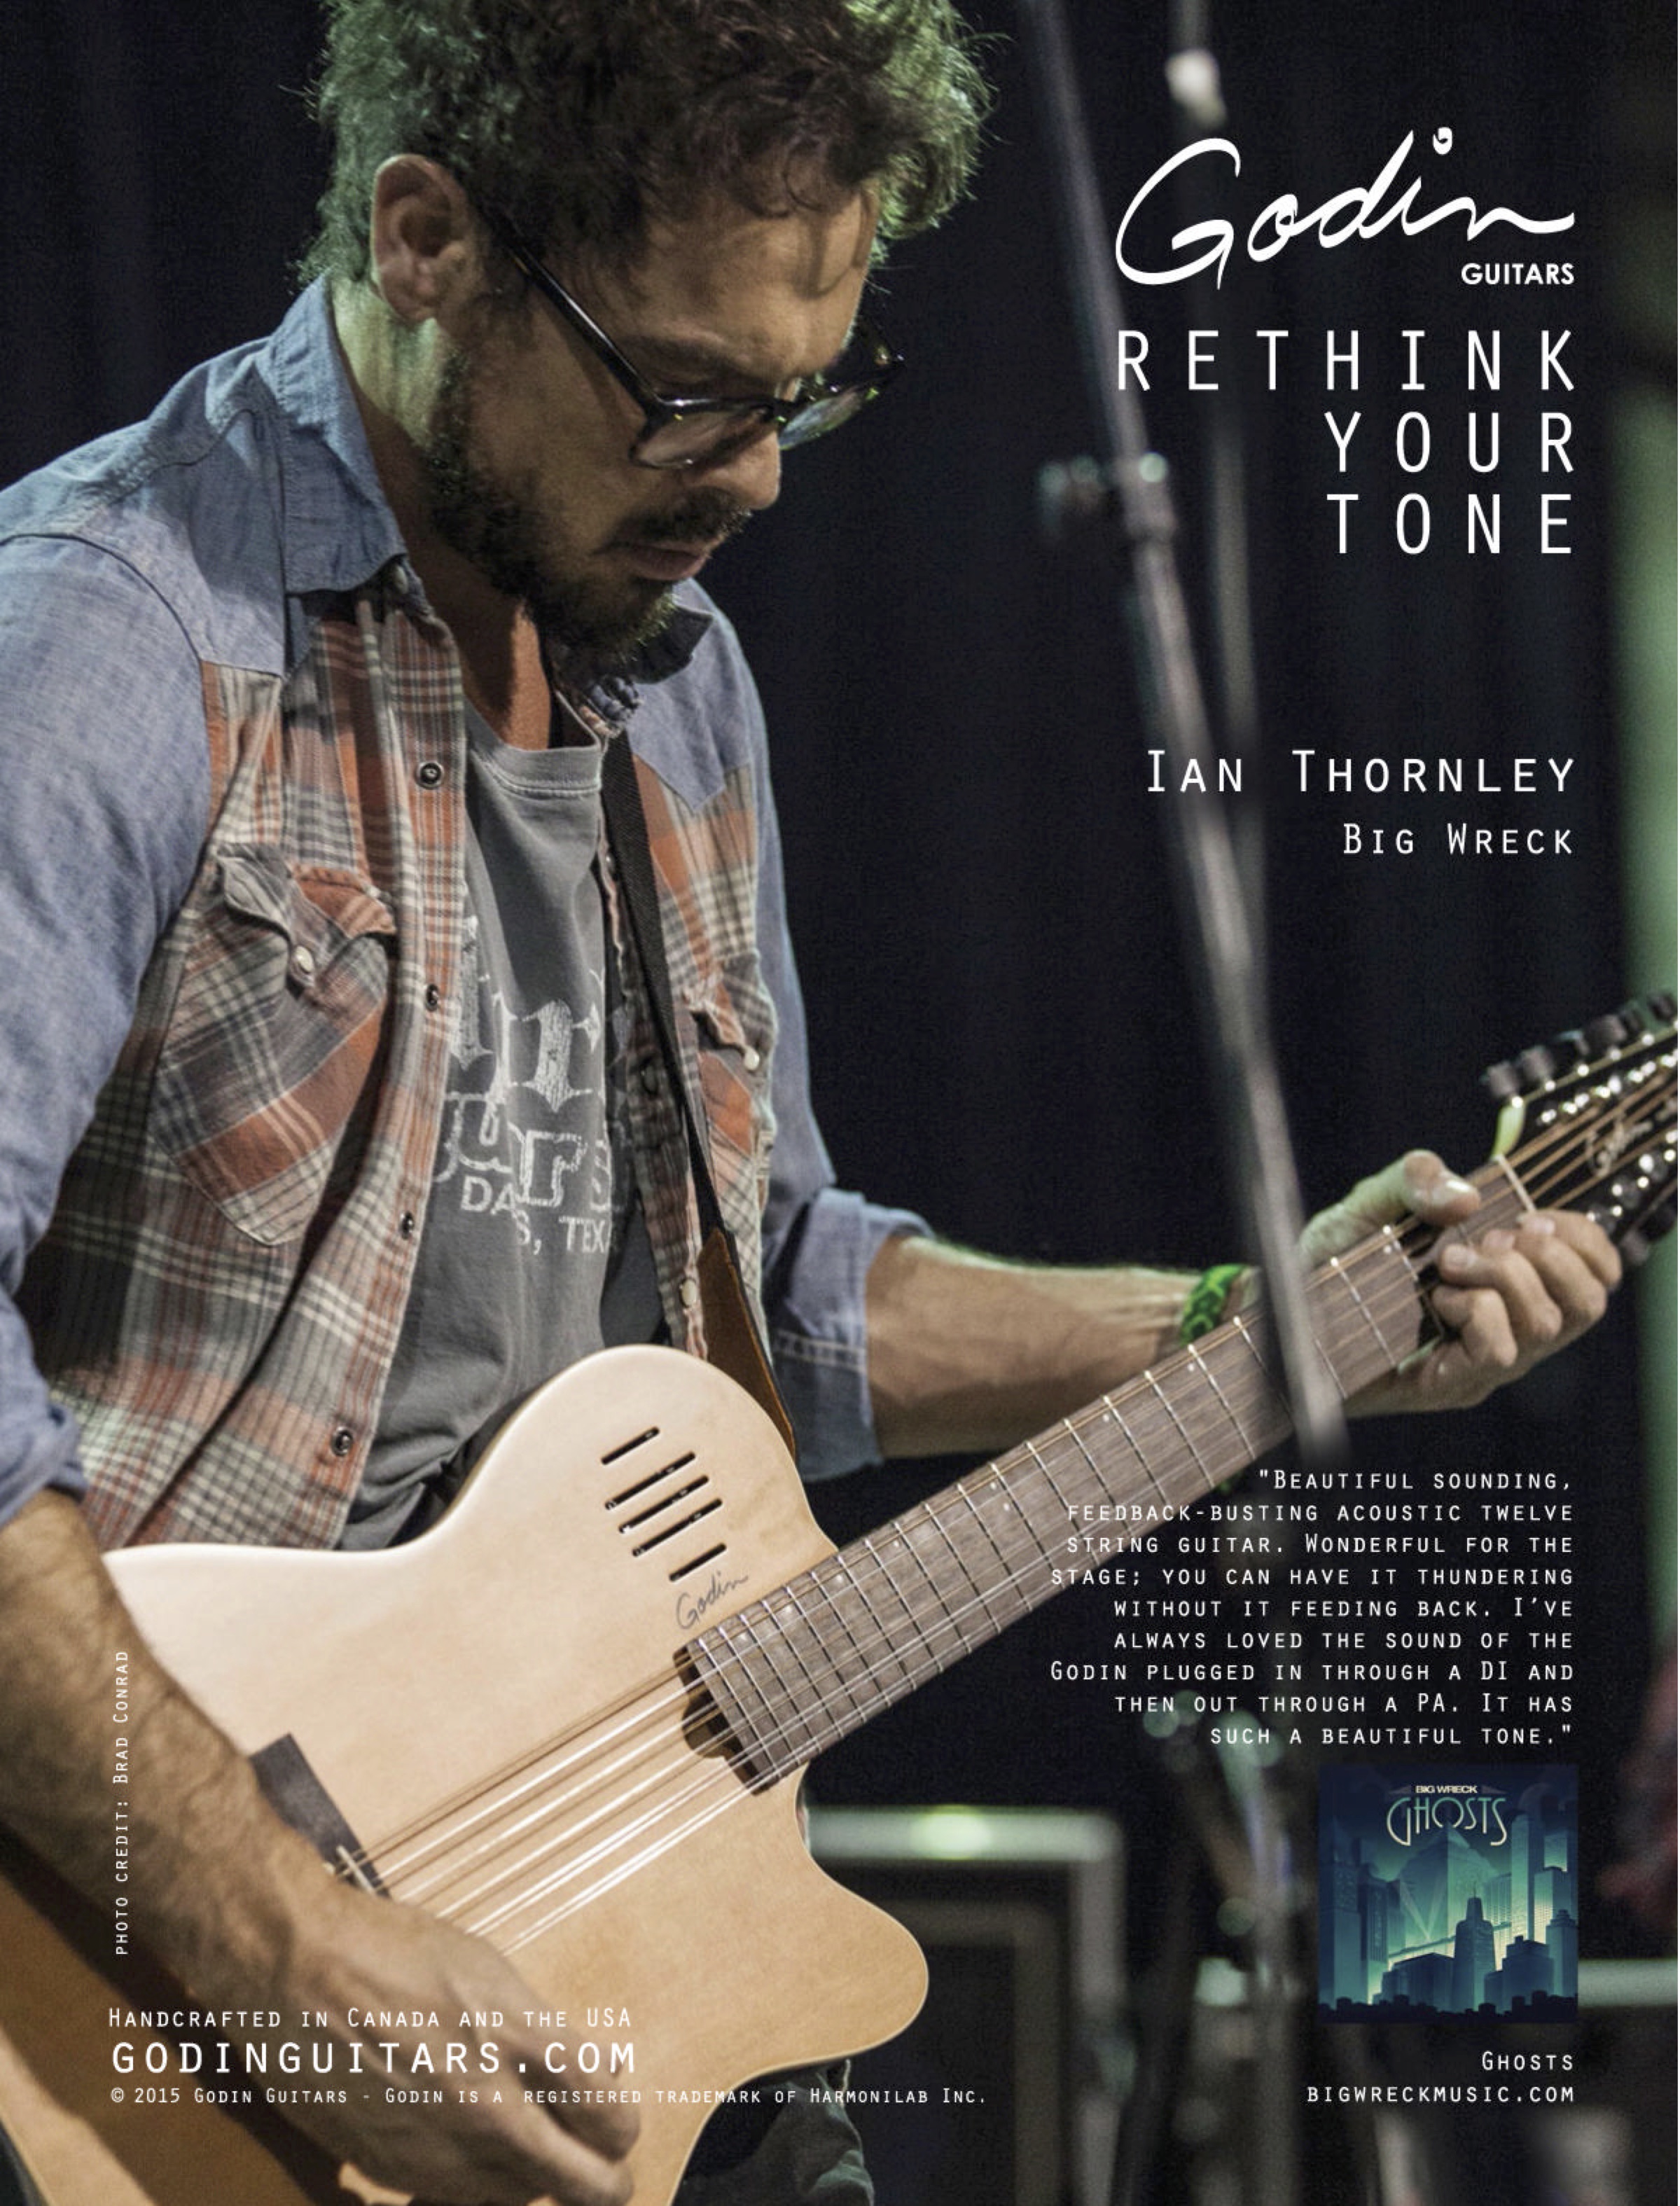 Ian Thornley с гитарой Godin